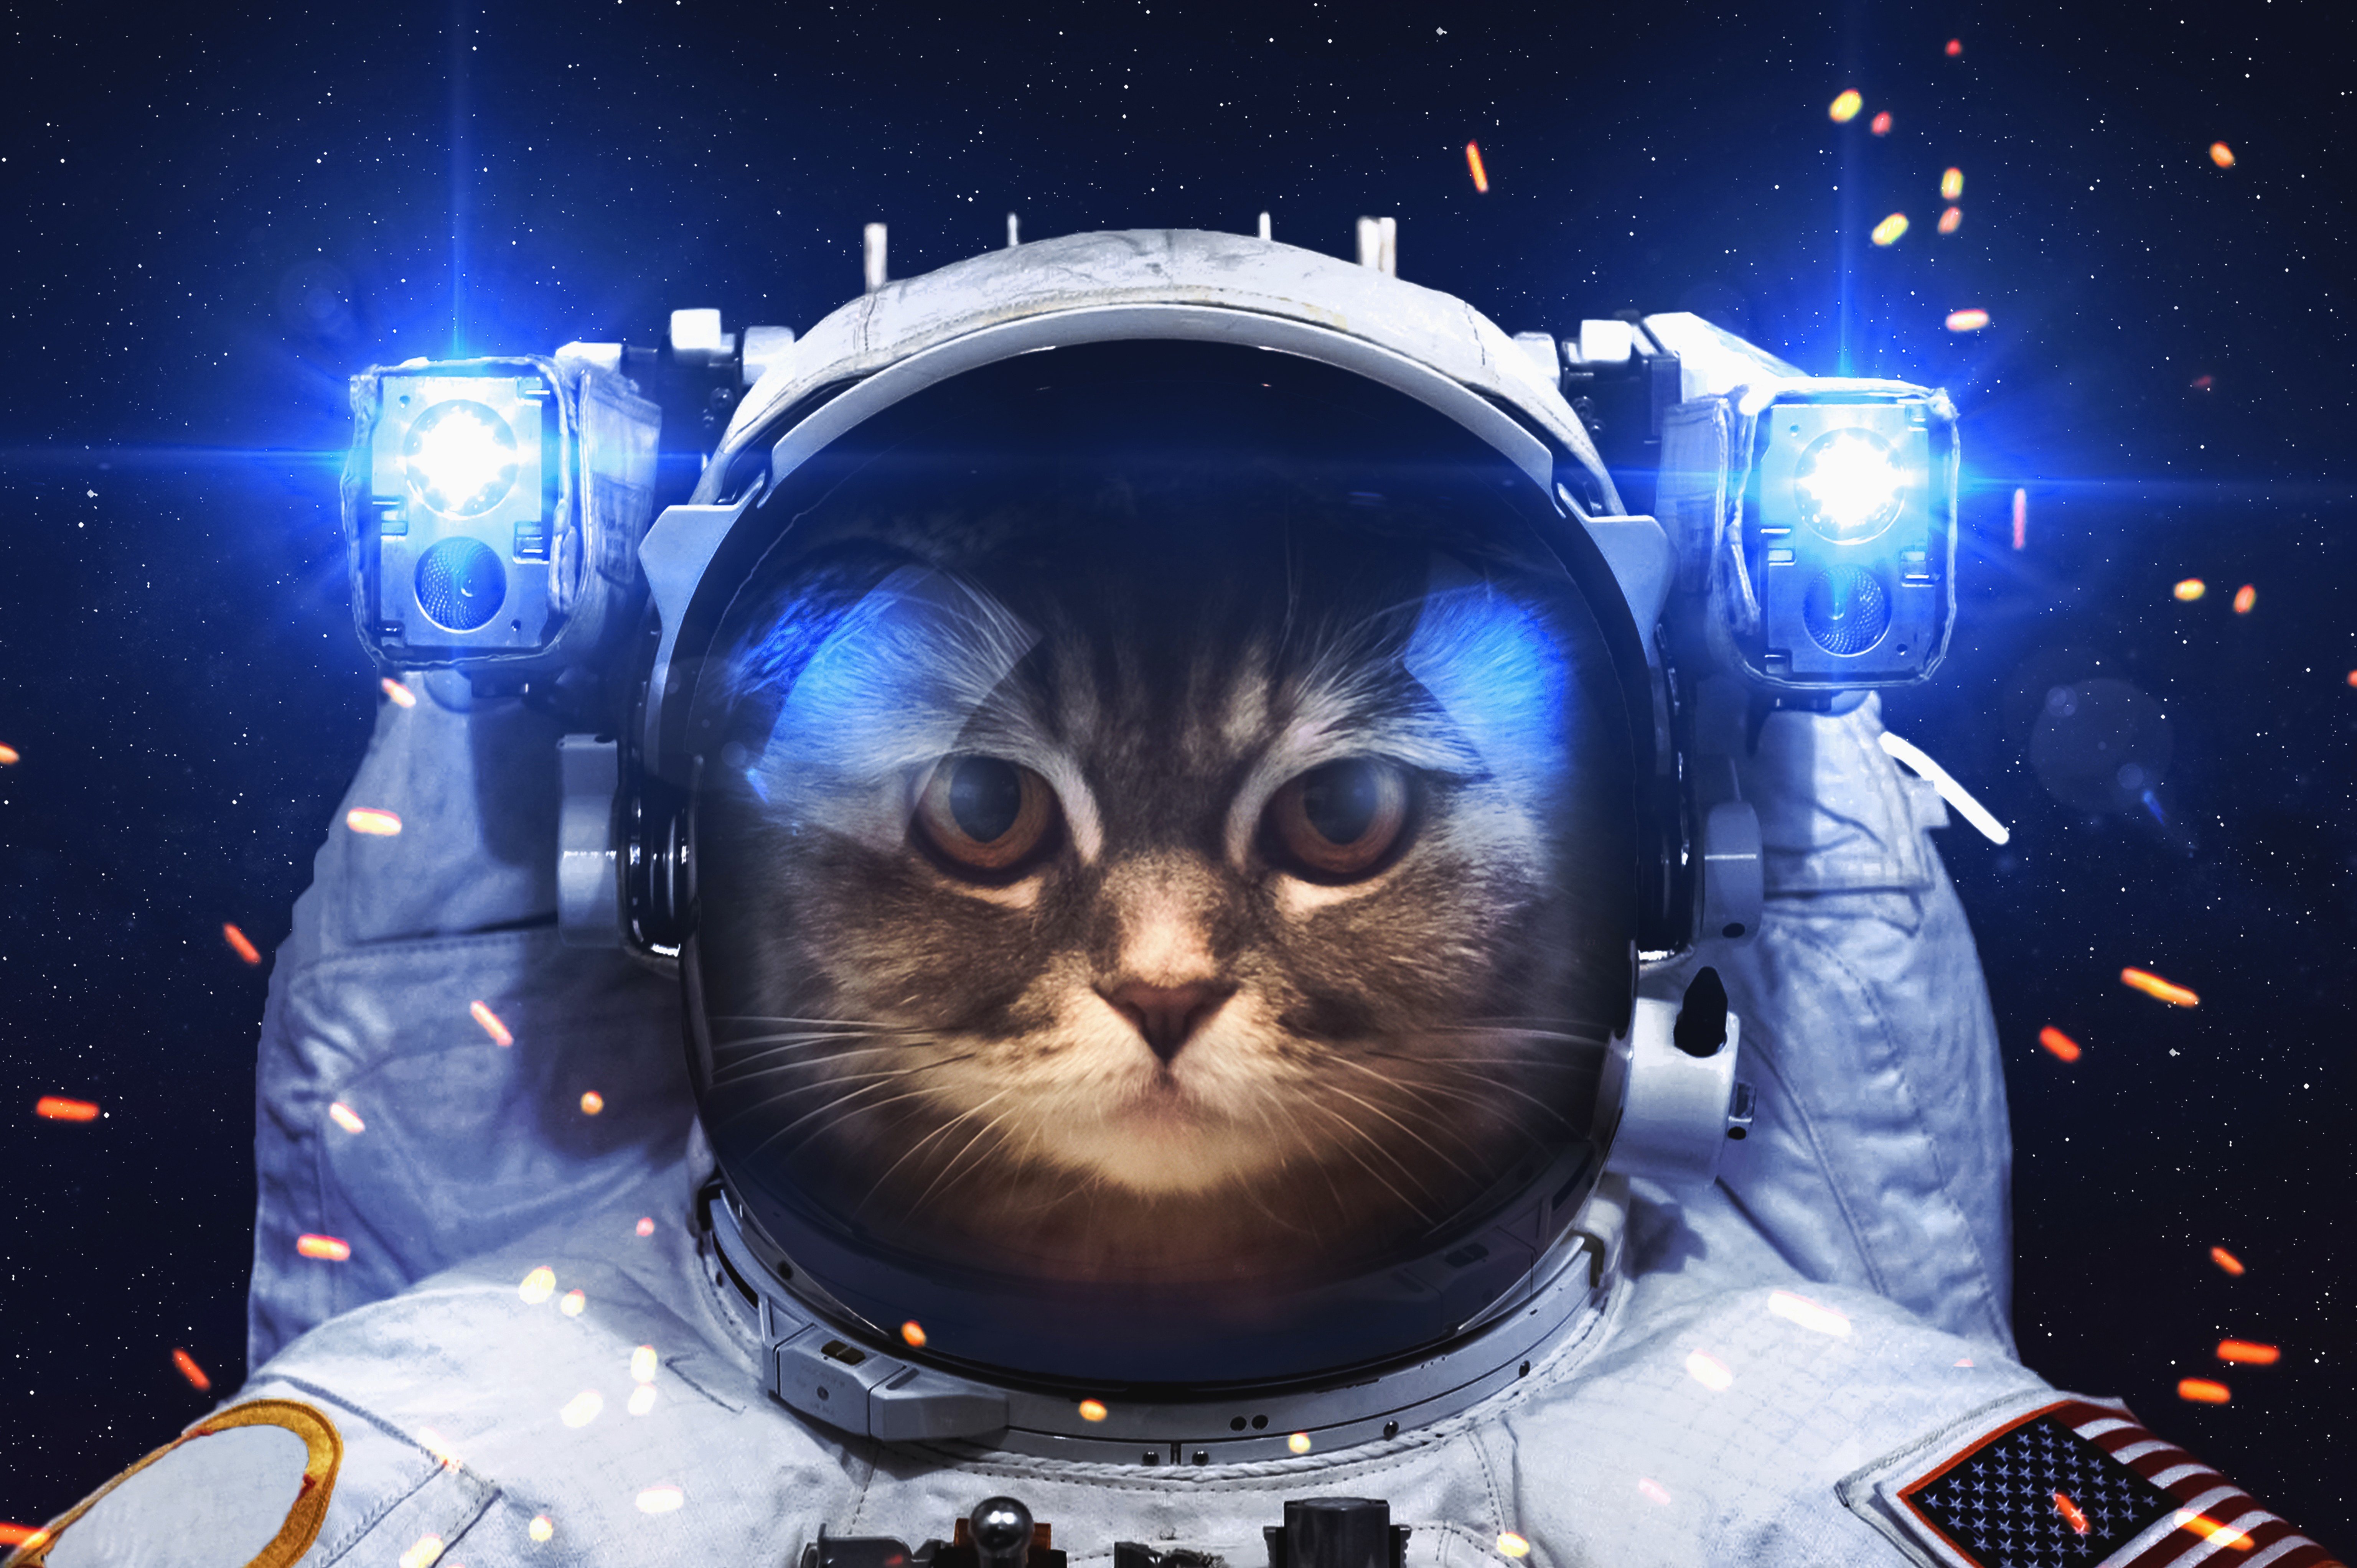 fond d'écran de chat de l'espace,astronaute,espace,cosmos,la photographie,illustration